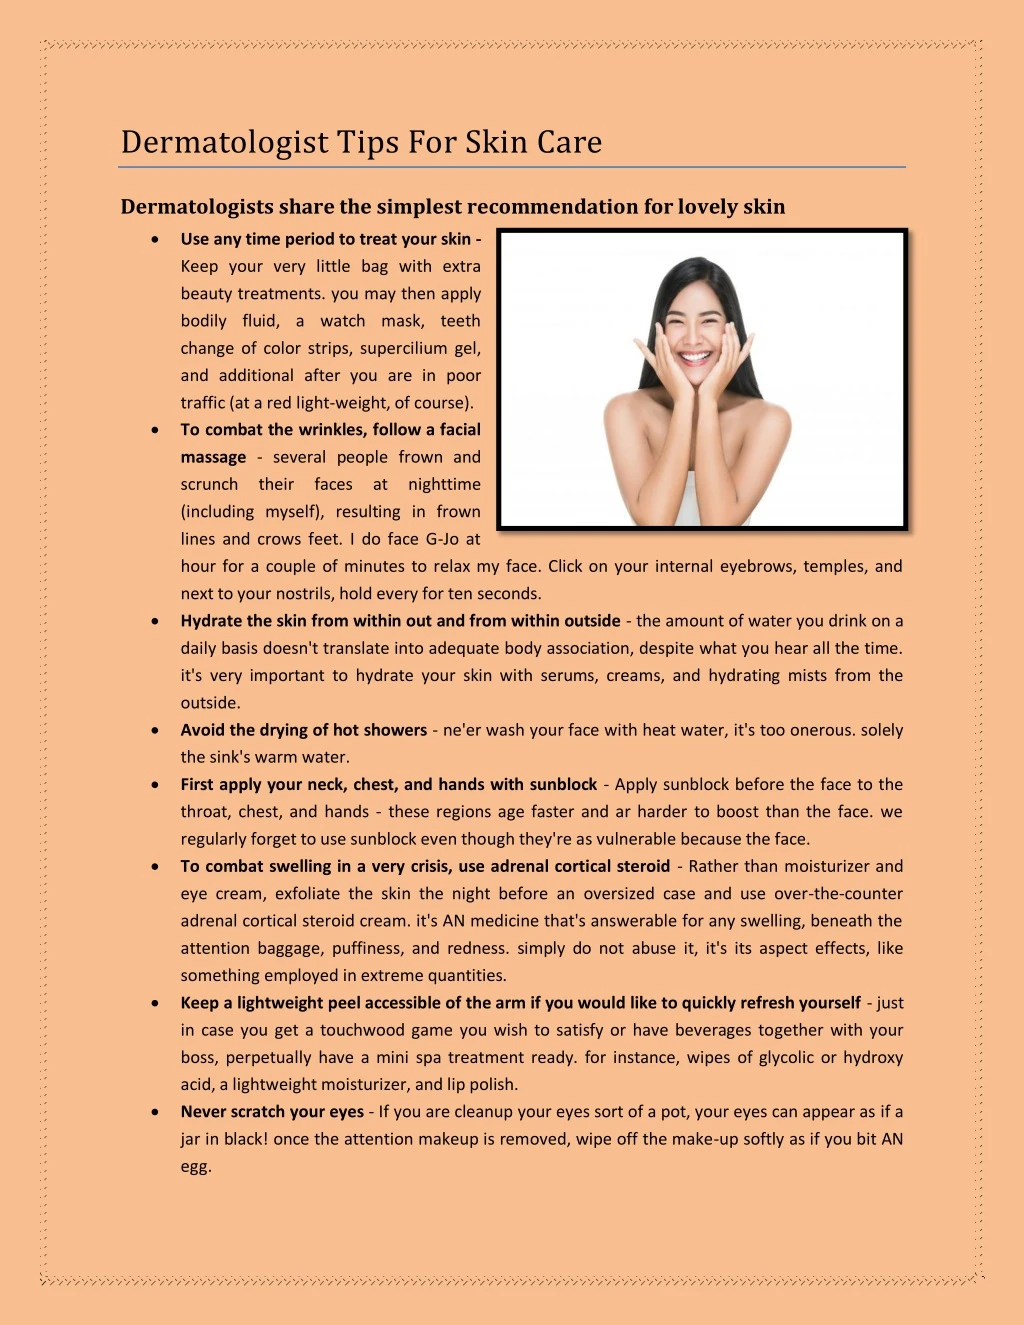 dermatologist tips for skin care